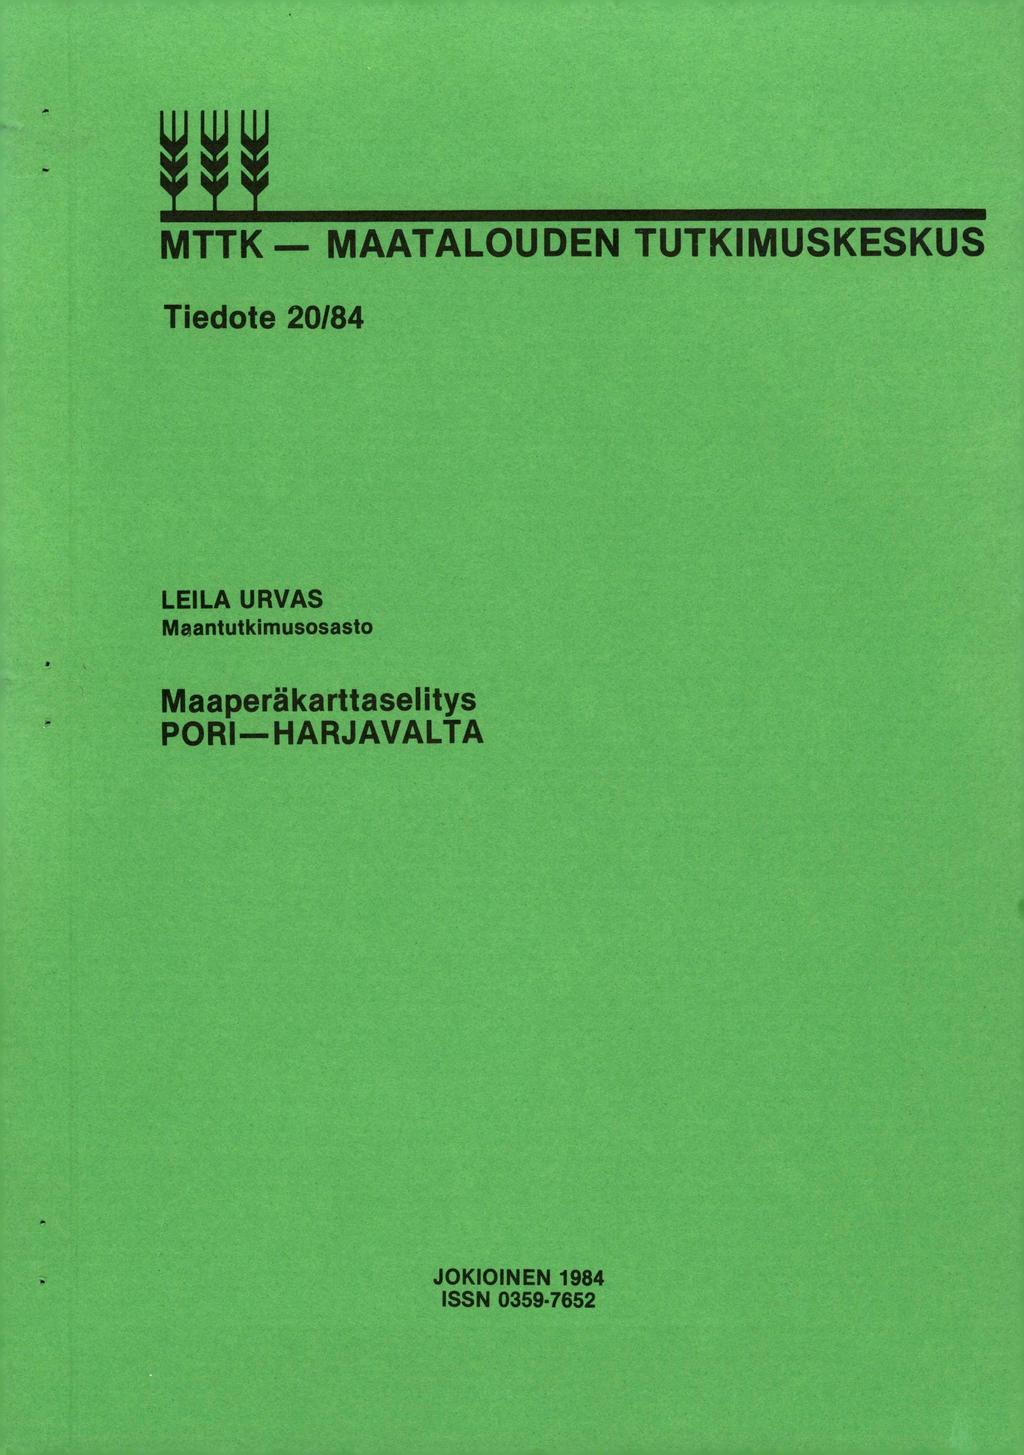 MTTK MAATALOUDEN TUTKIMUSKESKUS Tiedote 2/84 LEILA URVAS